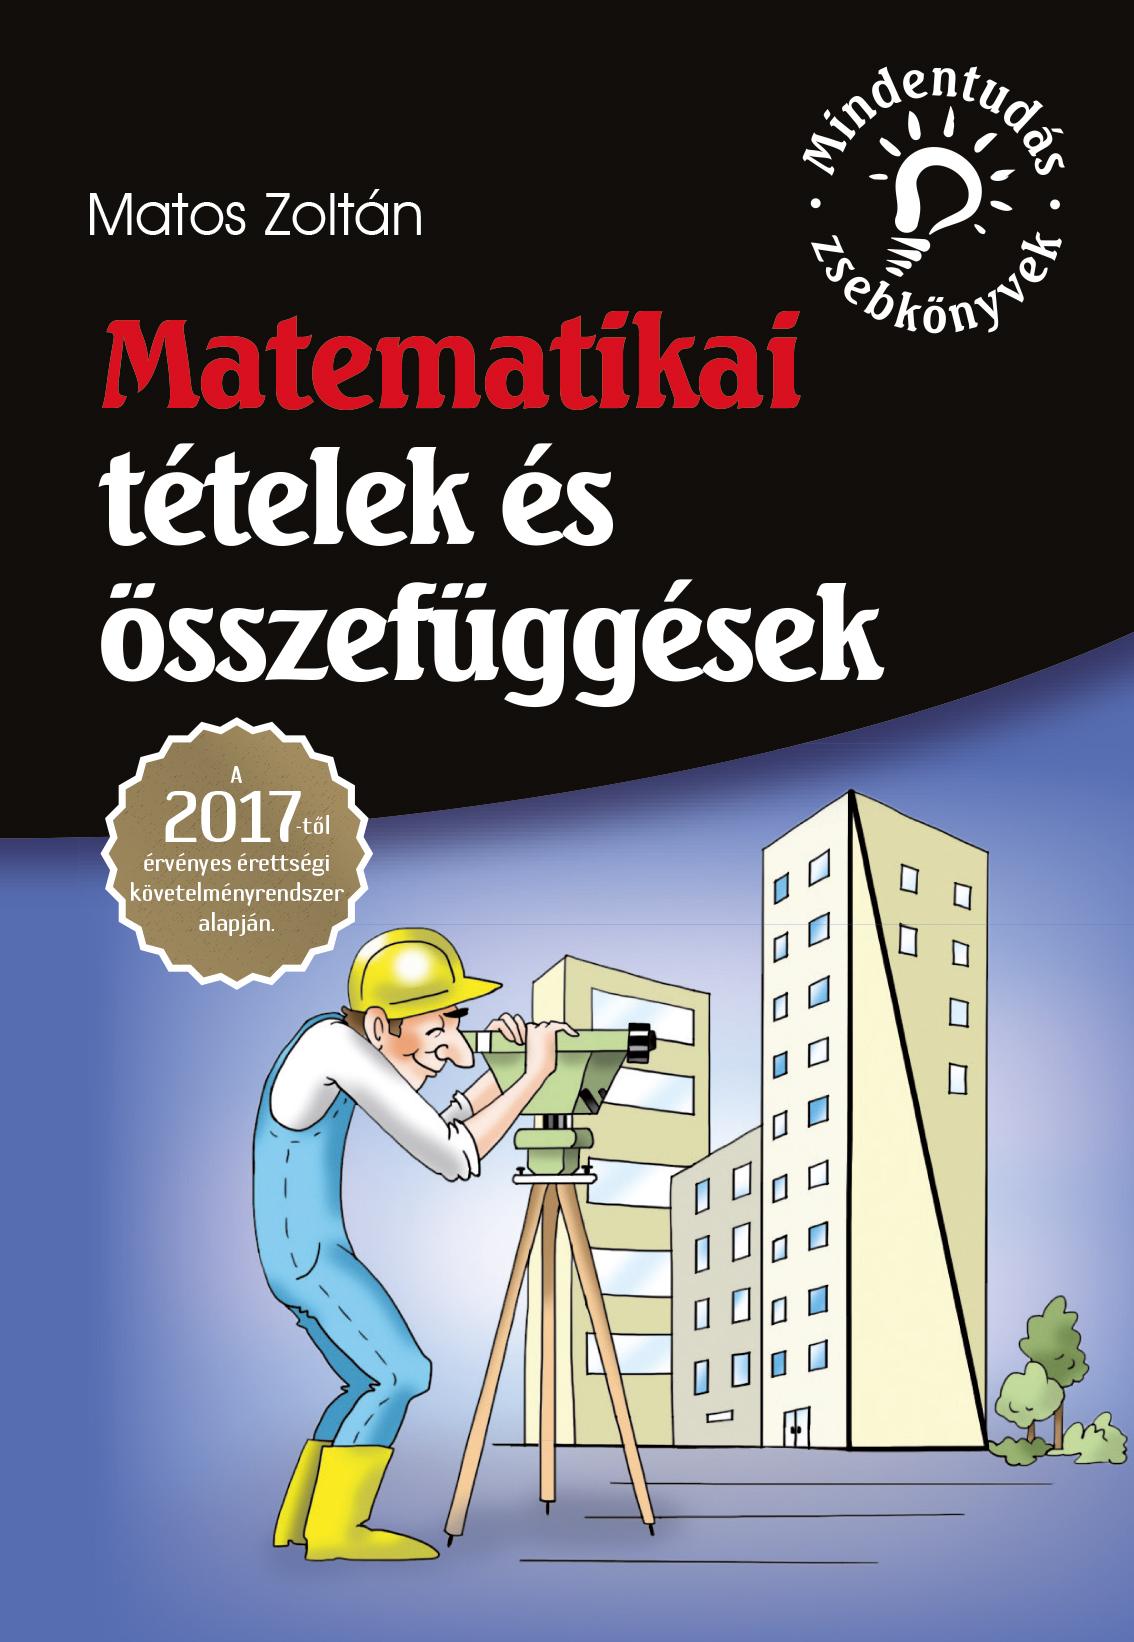 Matos Zoltán - Mindentudás zsebkönyvek - Matematikai tételek és összefüggések - A 2017-től érvényes érettségi követelményrendszer alapján